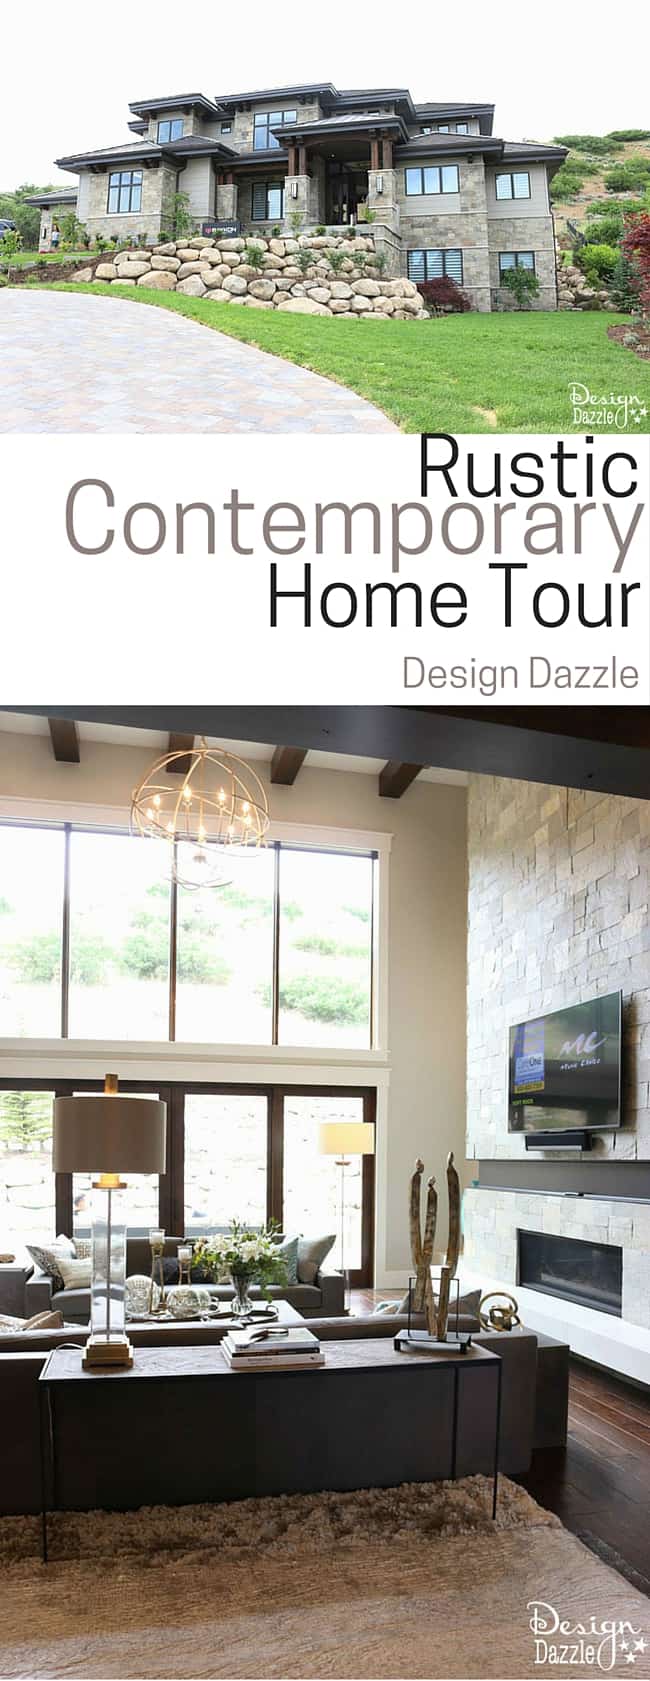 Amazing Rustic Contemporary Home Tour! | Design Dazzle